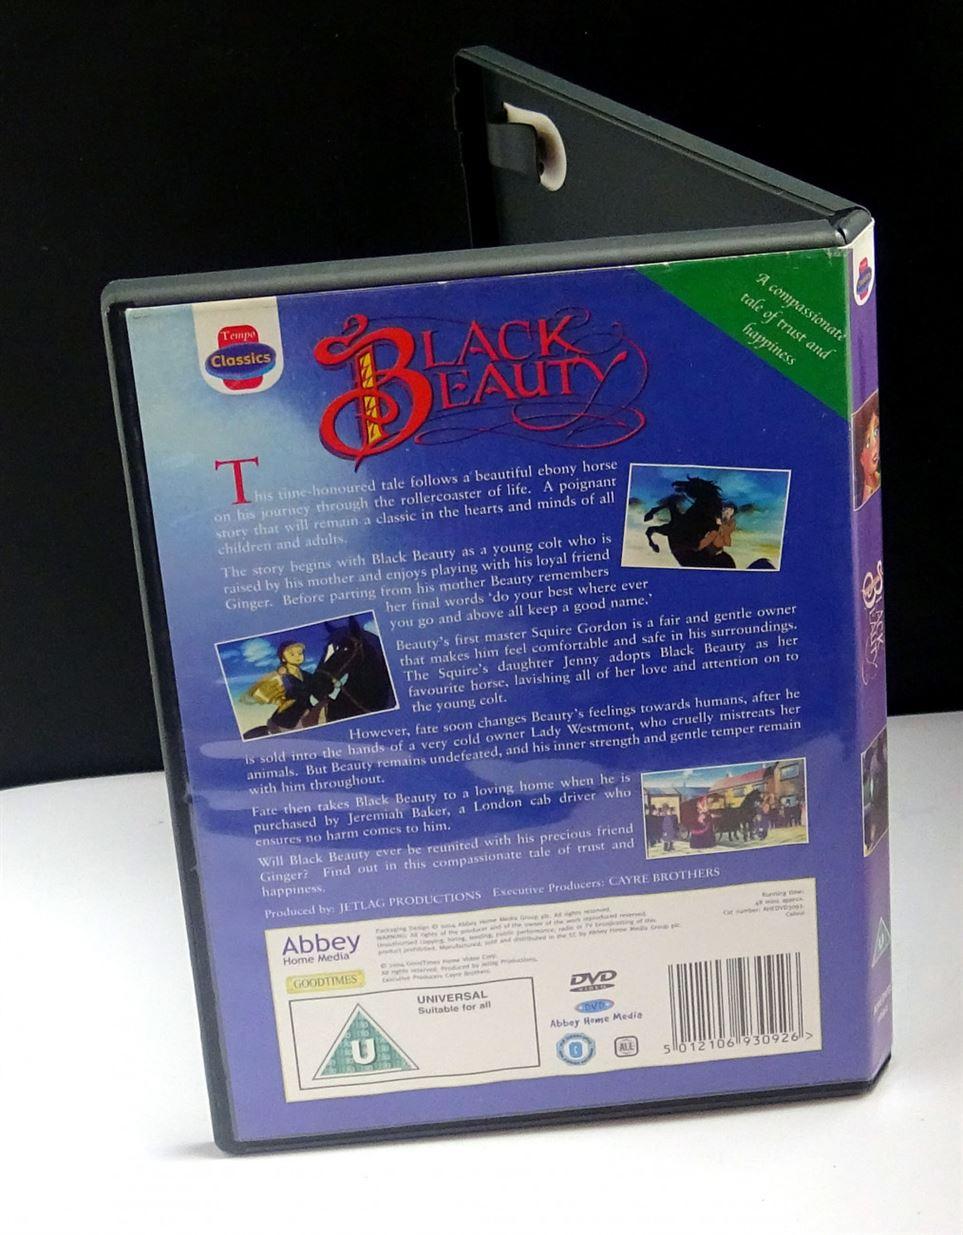 Black Beauty - DVD - region 0 - EU stock